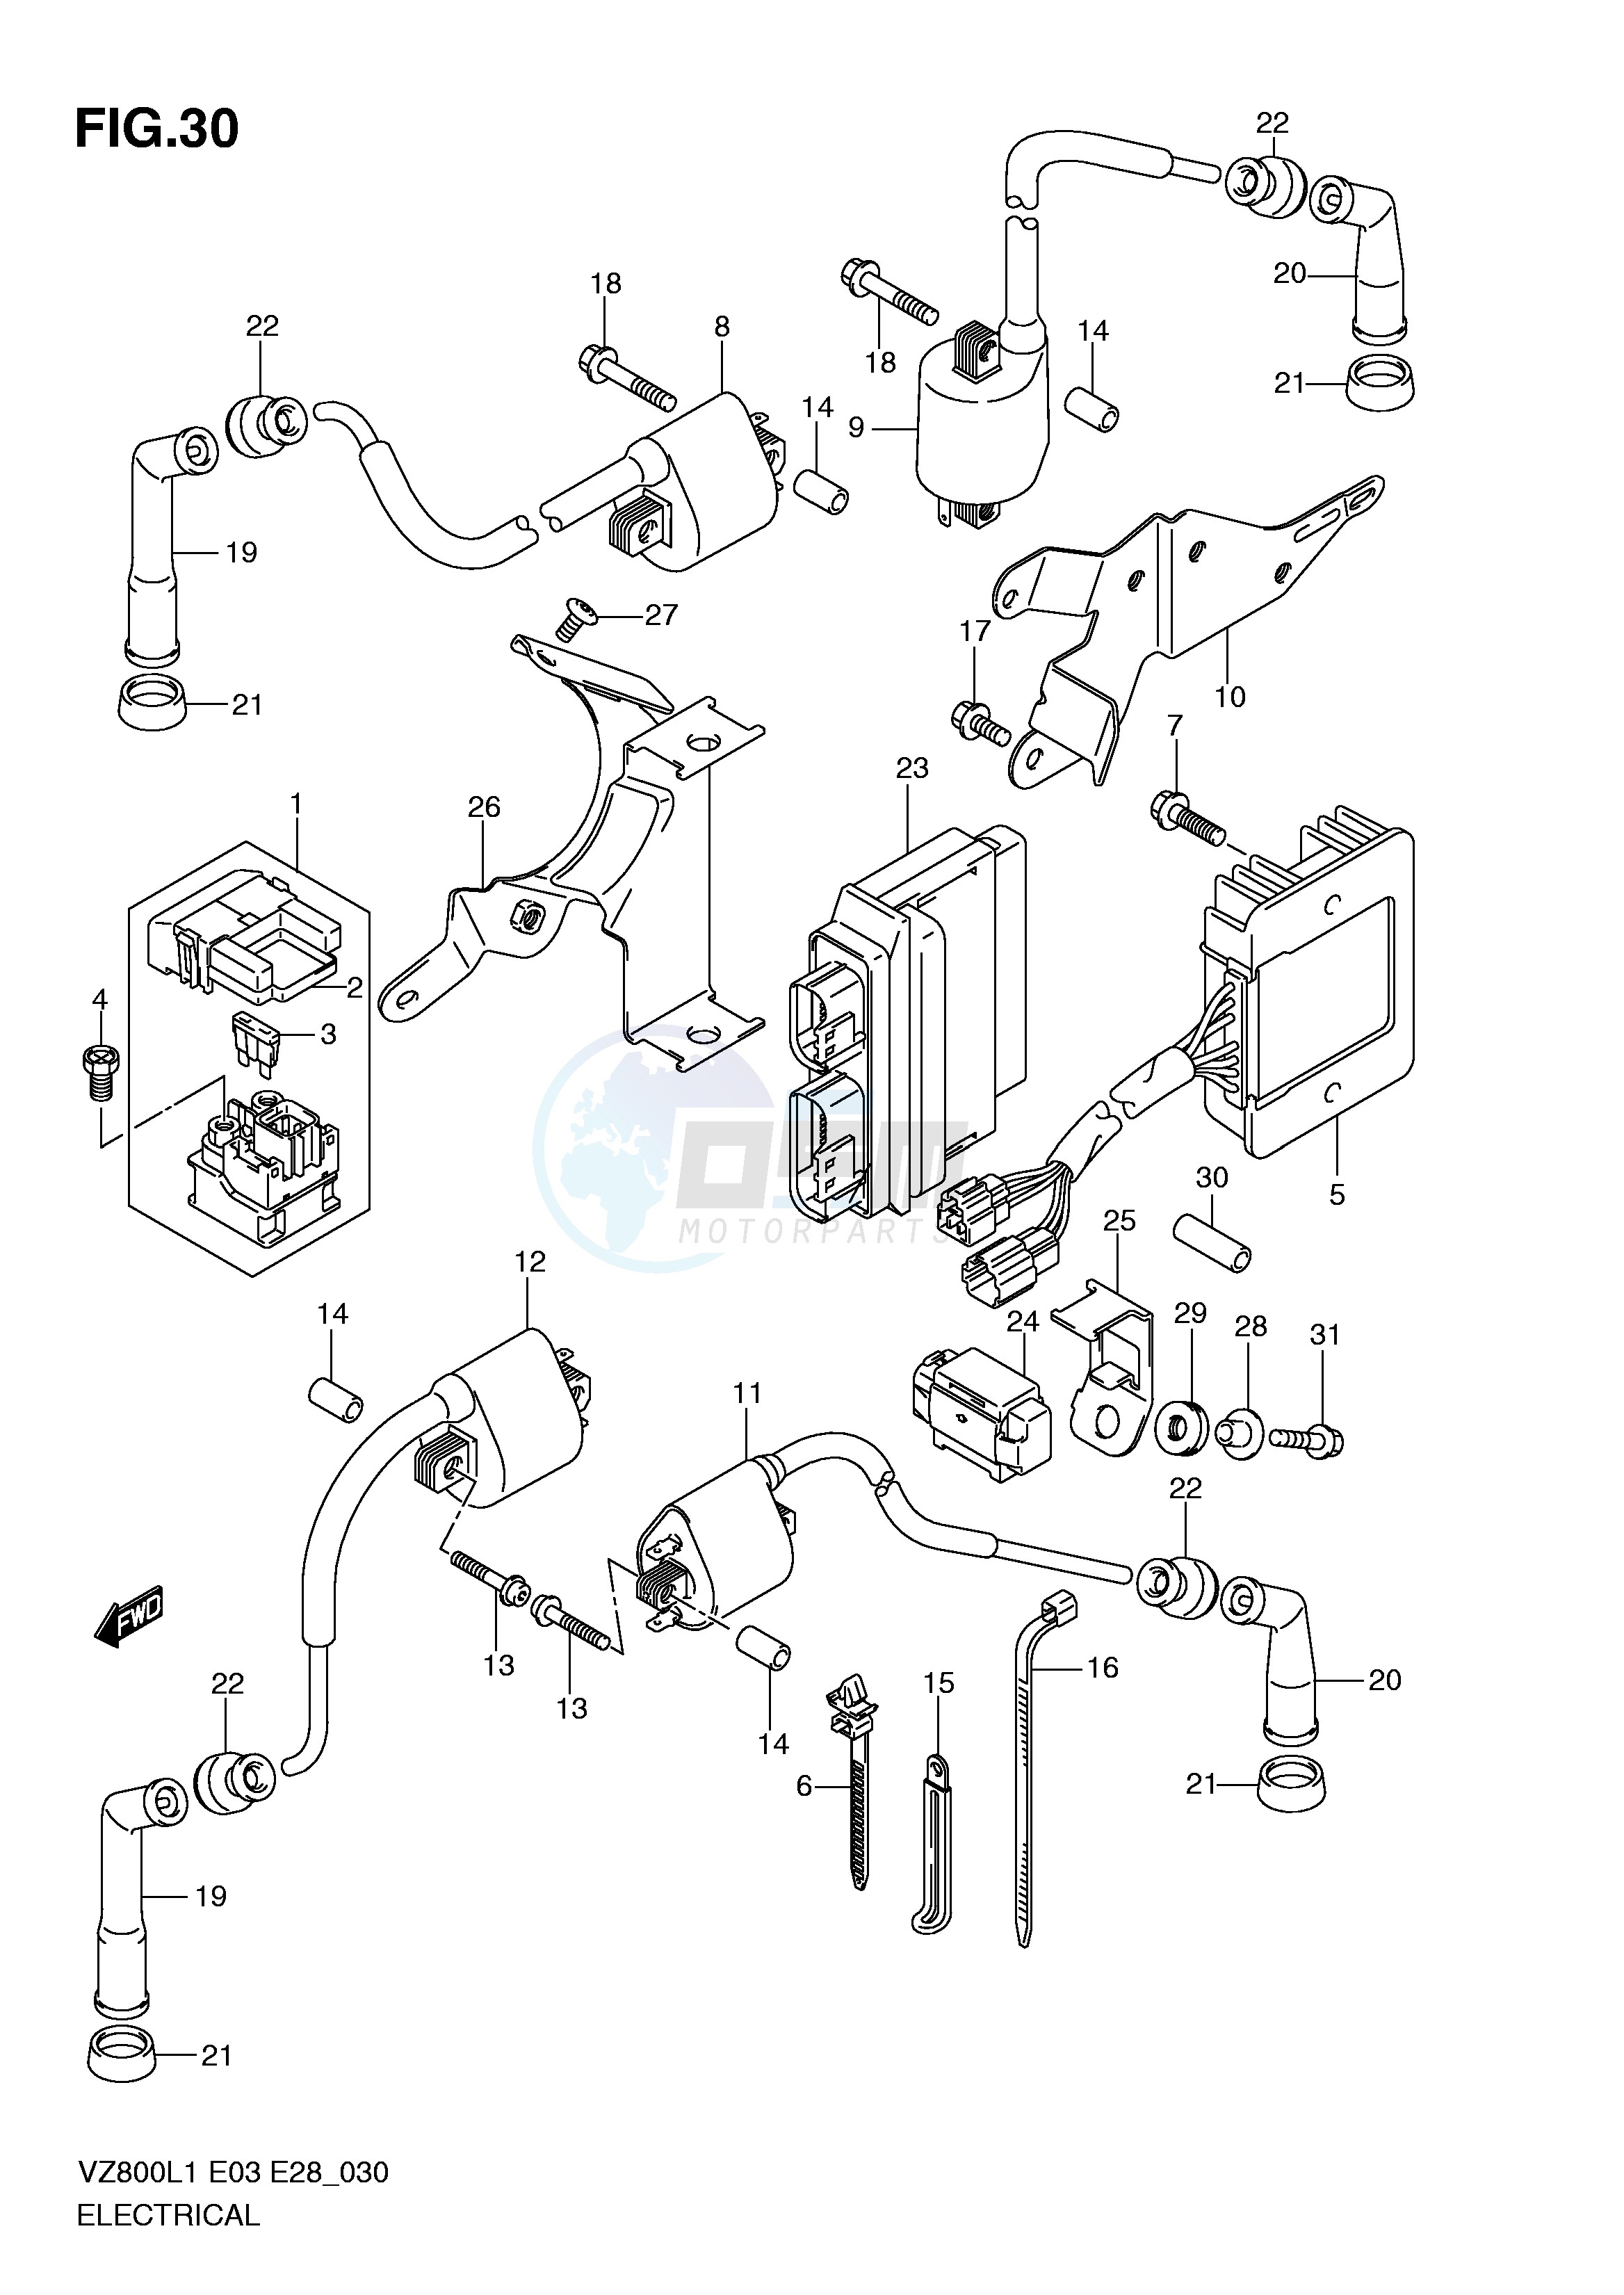 ELECTRICAL (VZ800L1 E3) blueprint